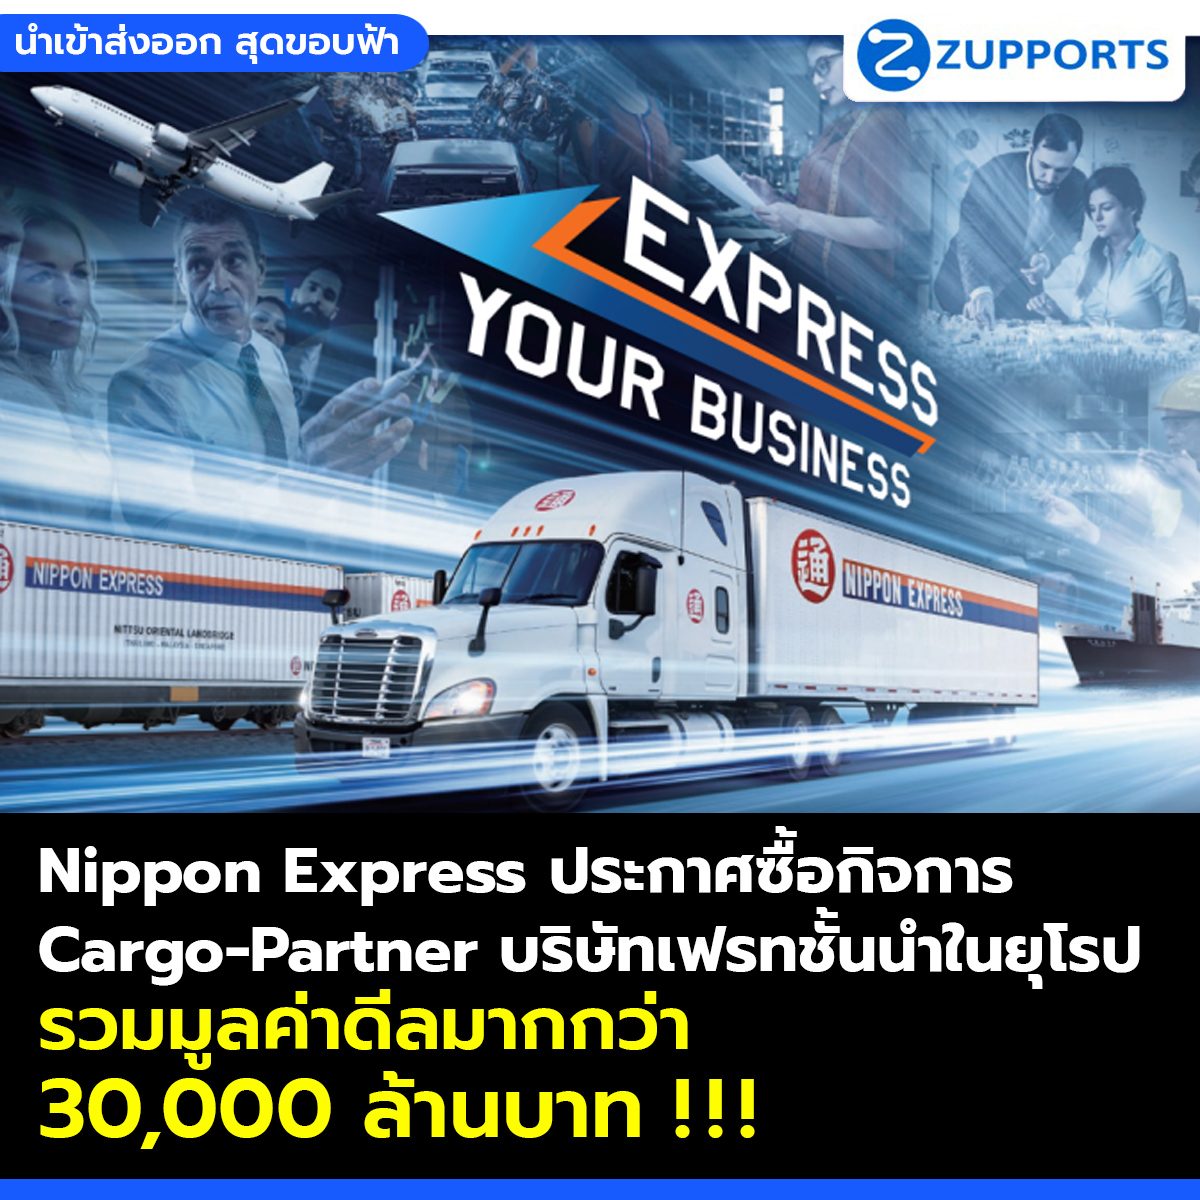 Nippon Express ประกาศซื้อกิจการ Cargo-Partner บริษัทเฟรทชั้นนำในยุโรป รวมมูลค่าดีลมากกว่า 30,000 ล้านบาท!